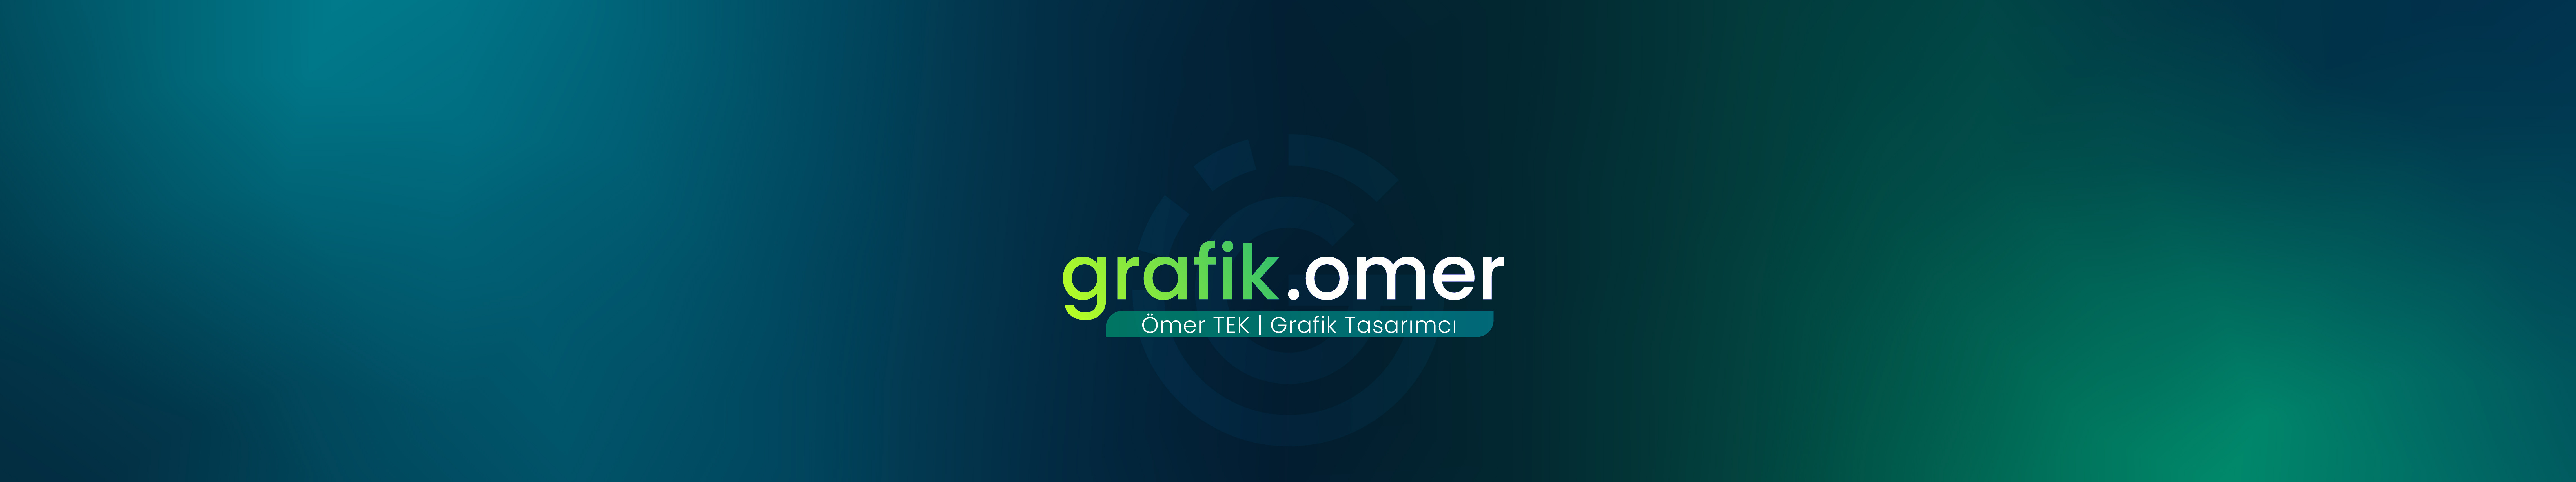 Banner de perfil de Ömer Tek